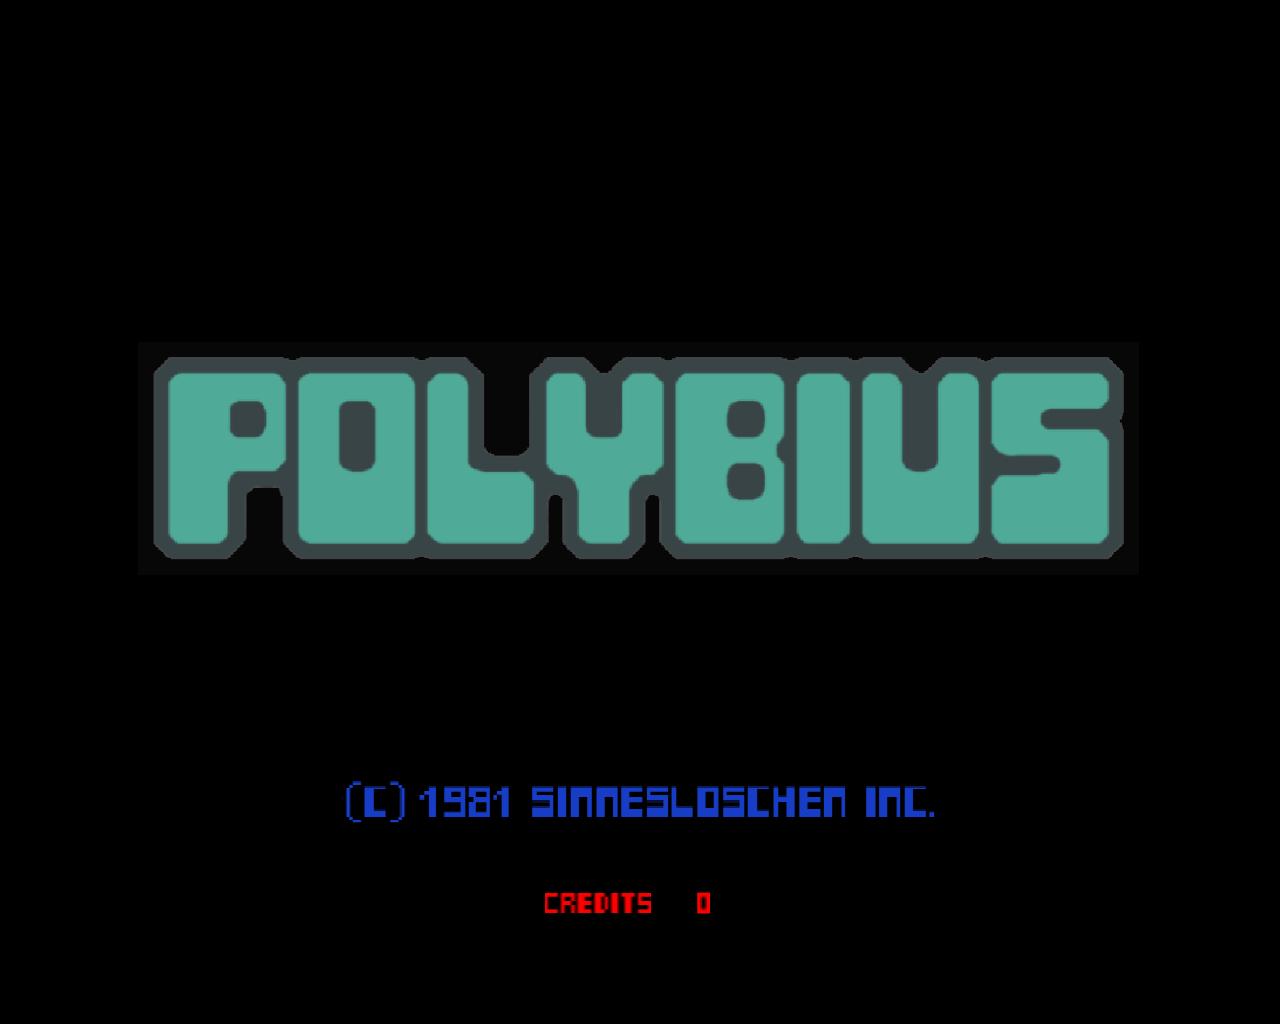 美国都市传说 - 神秘街机Polybius